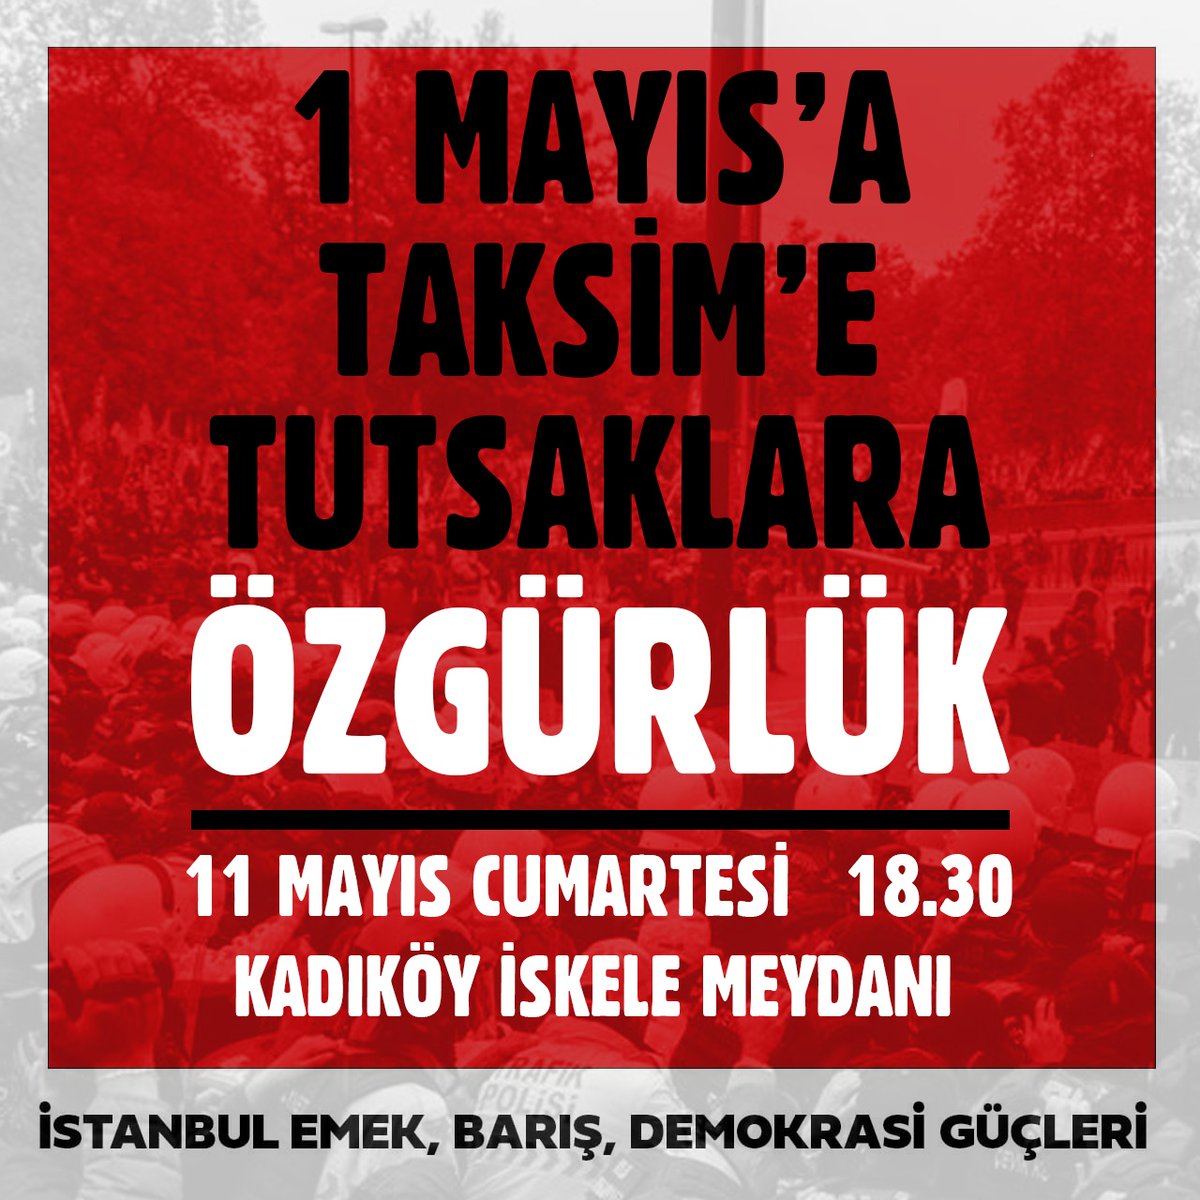 📢Eylem Çağrısı '1 Mayıs', Taksim'e, Tutsaklara ÖZGÜRLÜK' 🗓️11 Mayıs Cumartesi 🕡18.30 📍Kadıköy İskele Meydanı